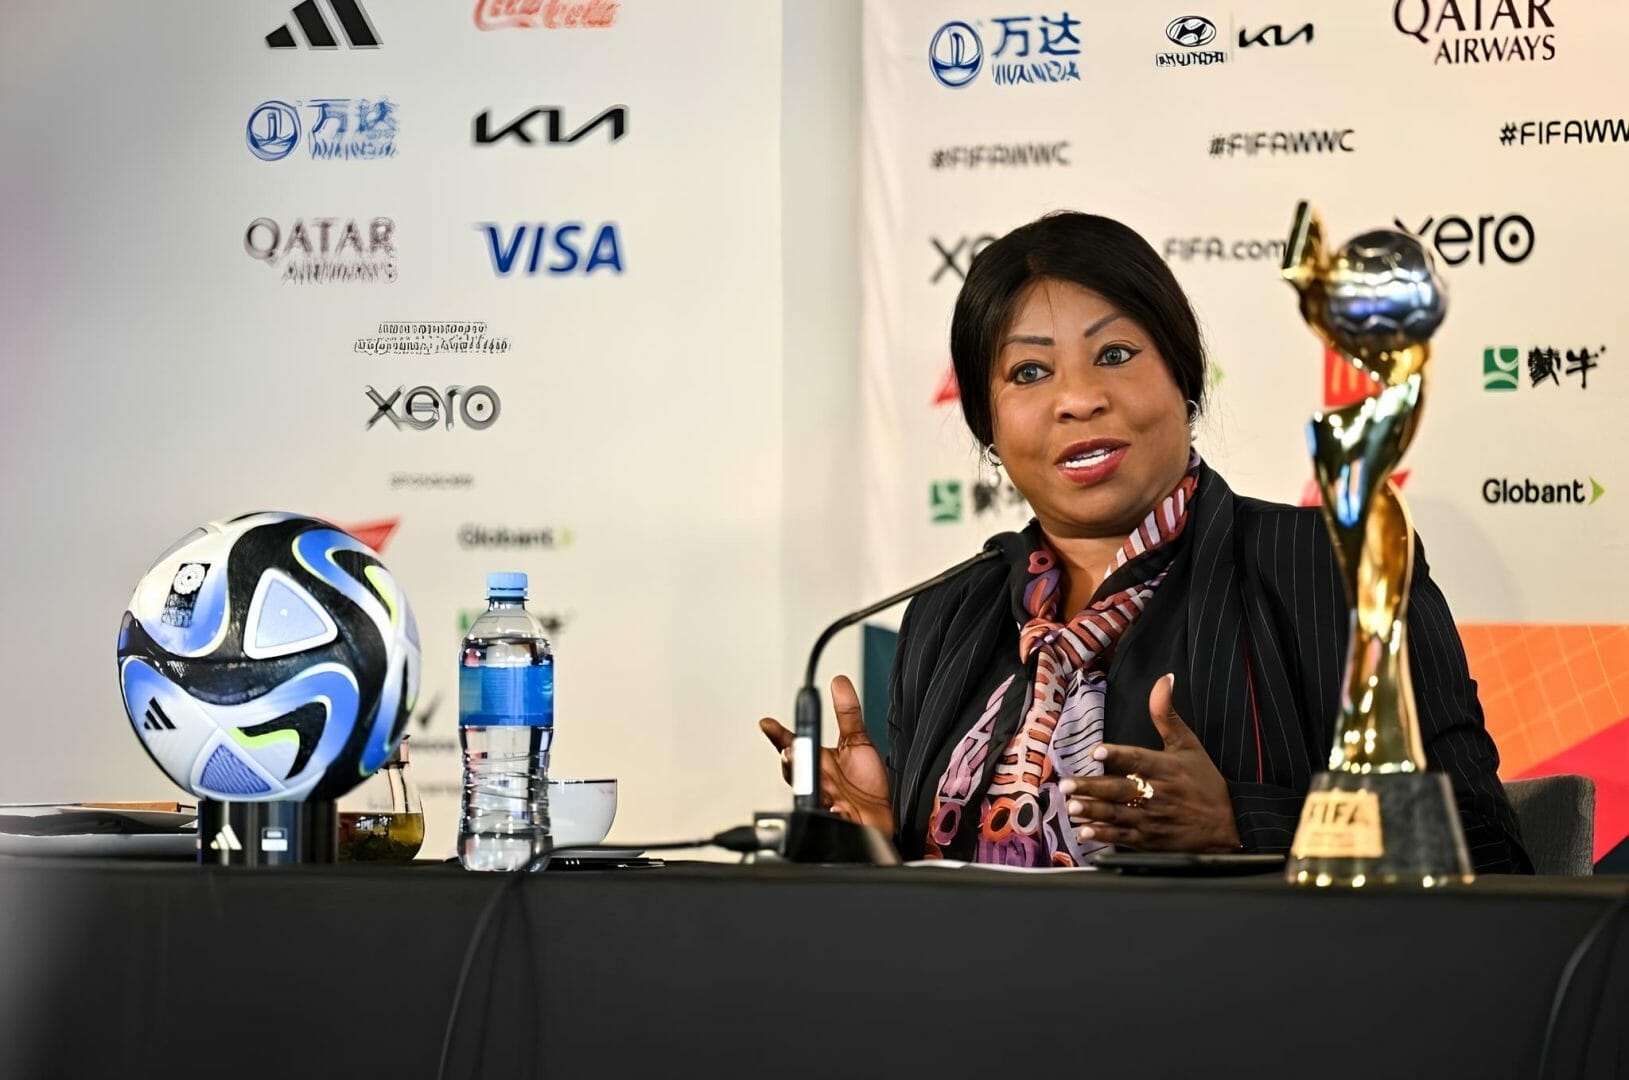 Fifa Busca Conquistar Marcas Históricas De Audiência E Receita No Mundial Feminino 2023